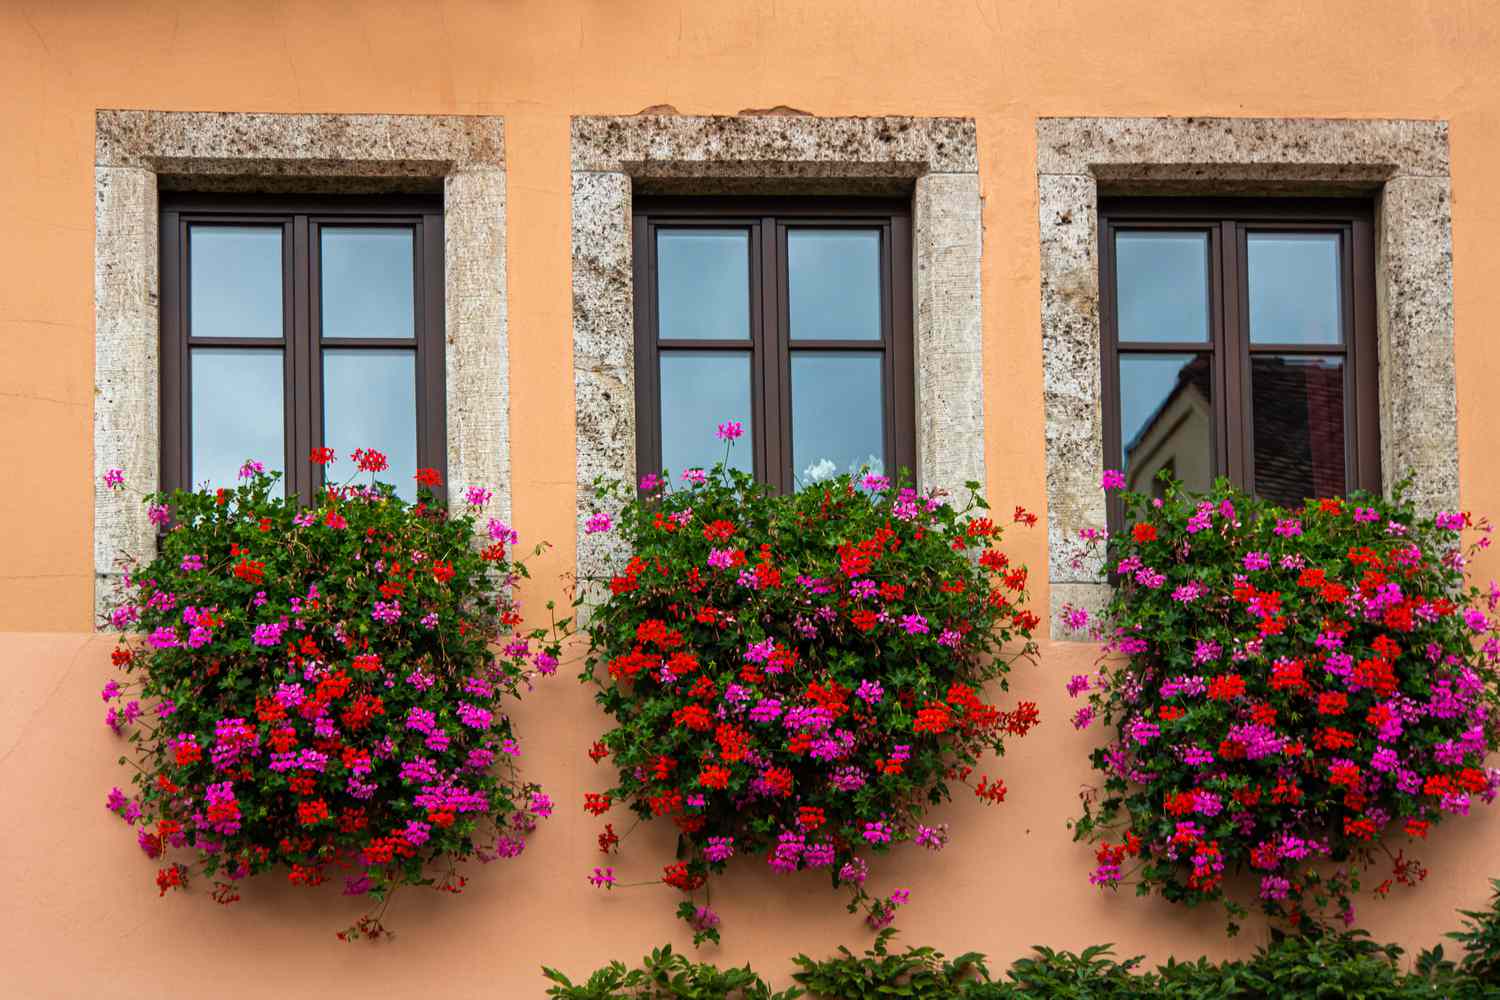 Plantas de geranio de hiedra colgadas fuera de los alféizares de las ventanas con flores rosas y rojas